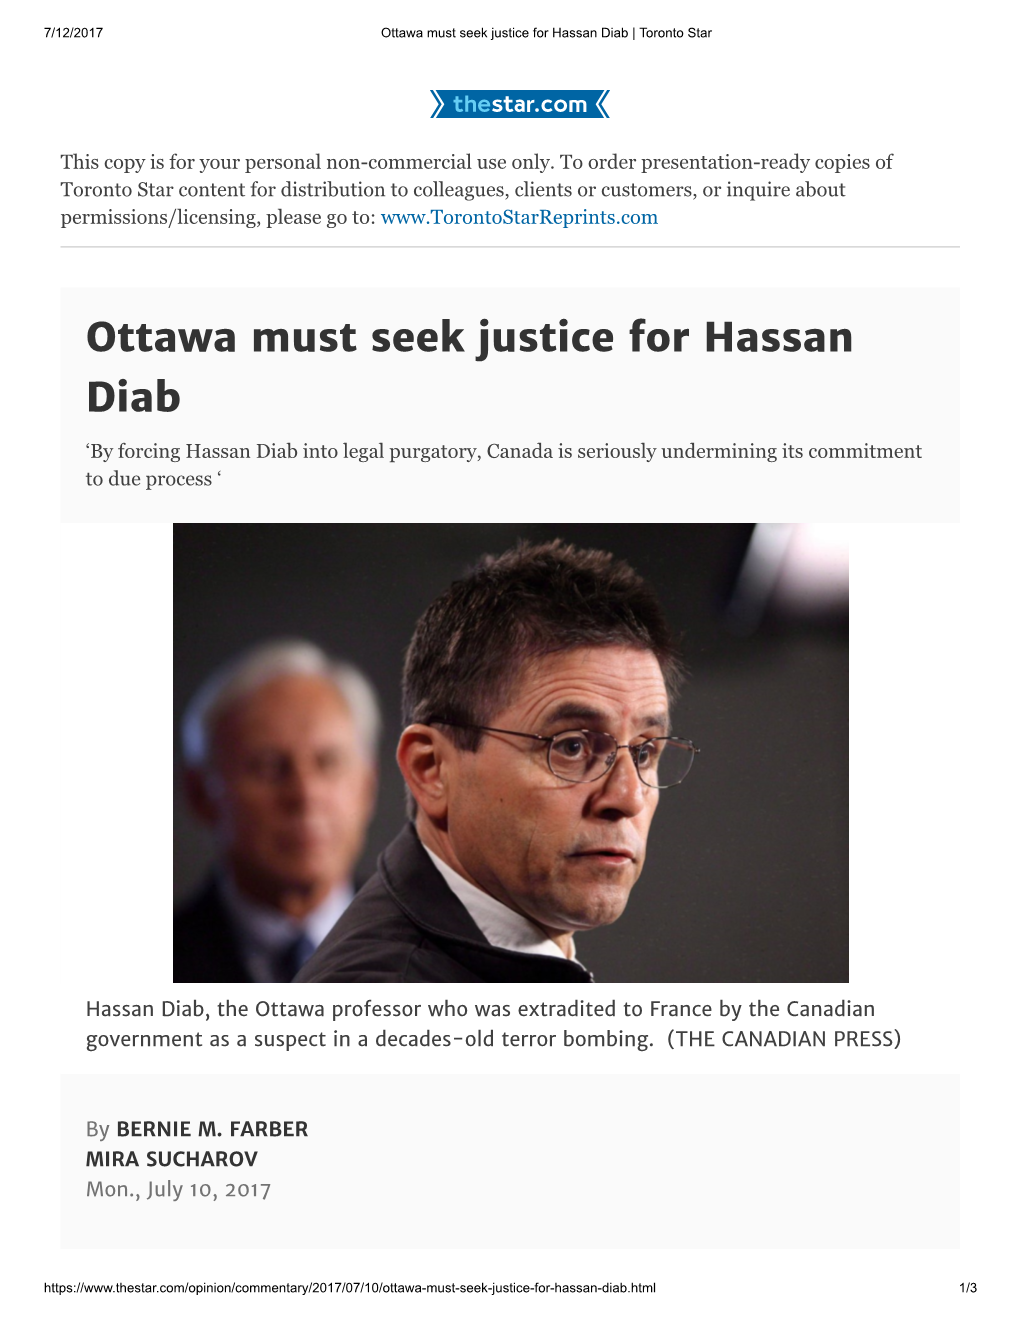 Ottawa Must Seek Justice for Hassan Diab | Toronto Star